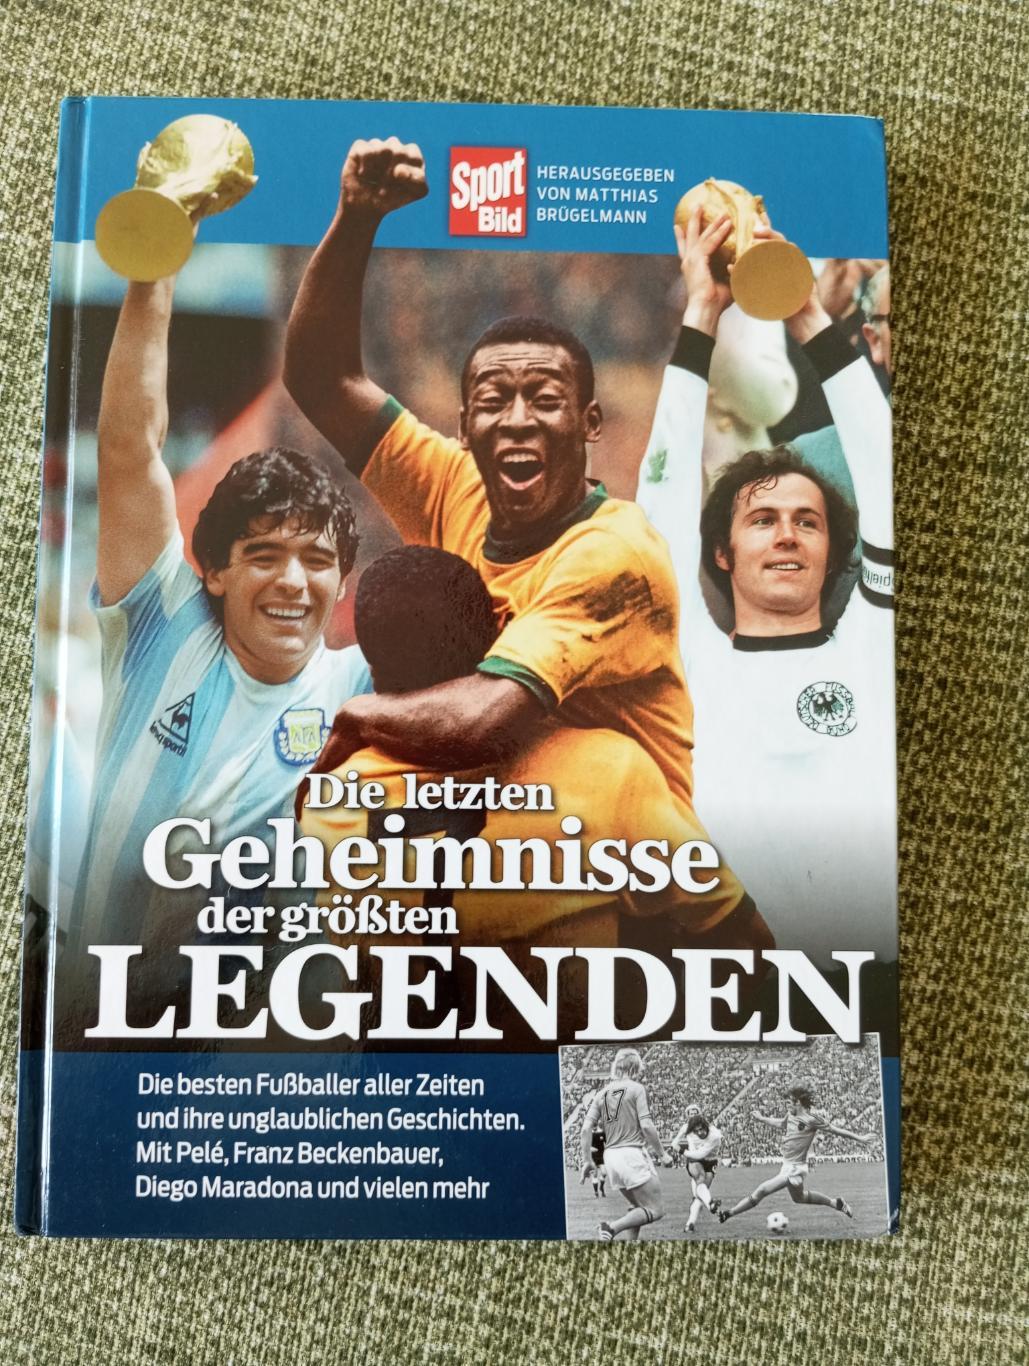 Легенды футбола (лучшие игроки мира) Книга.Sport Bild